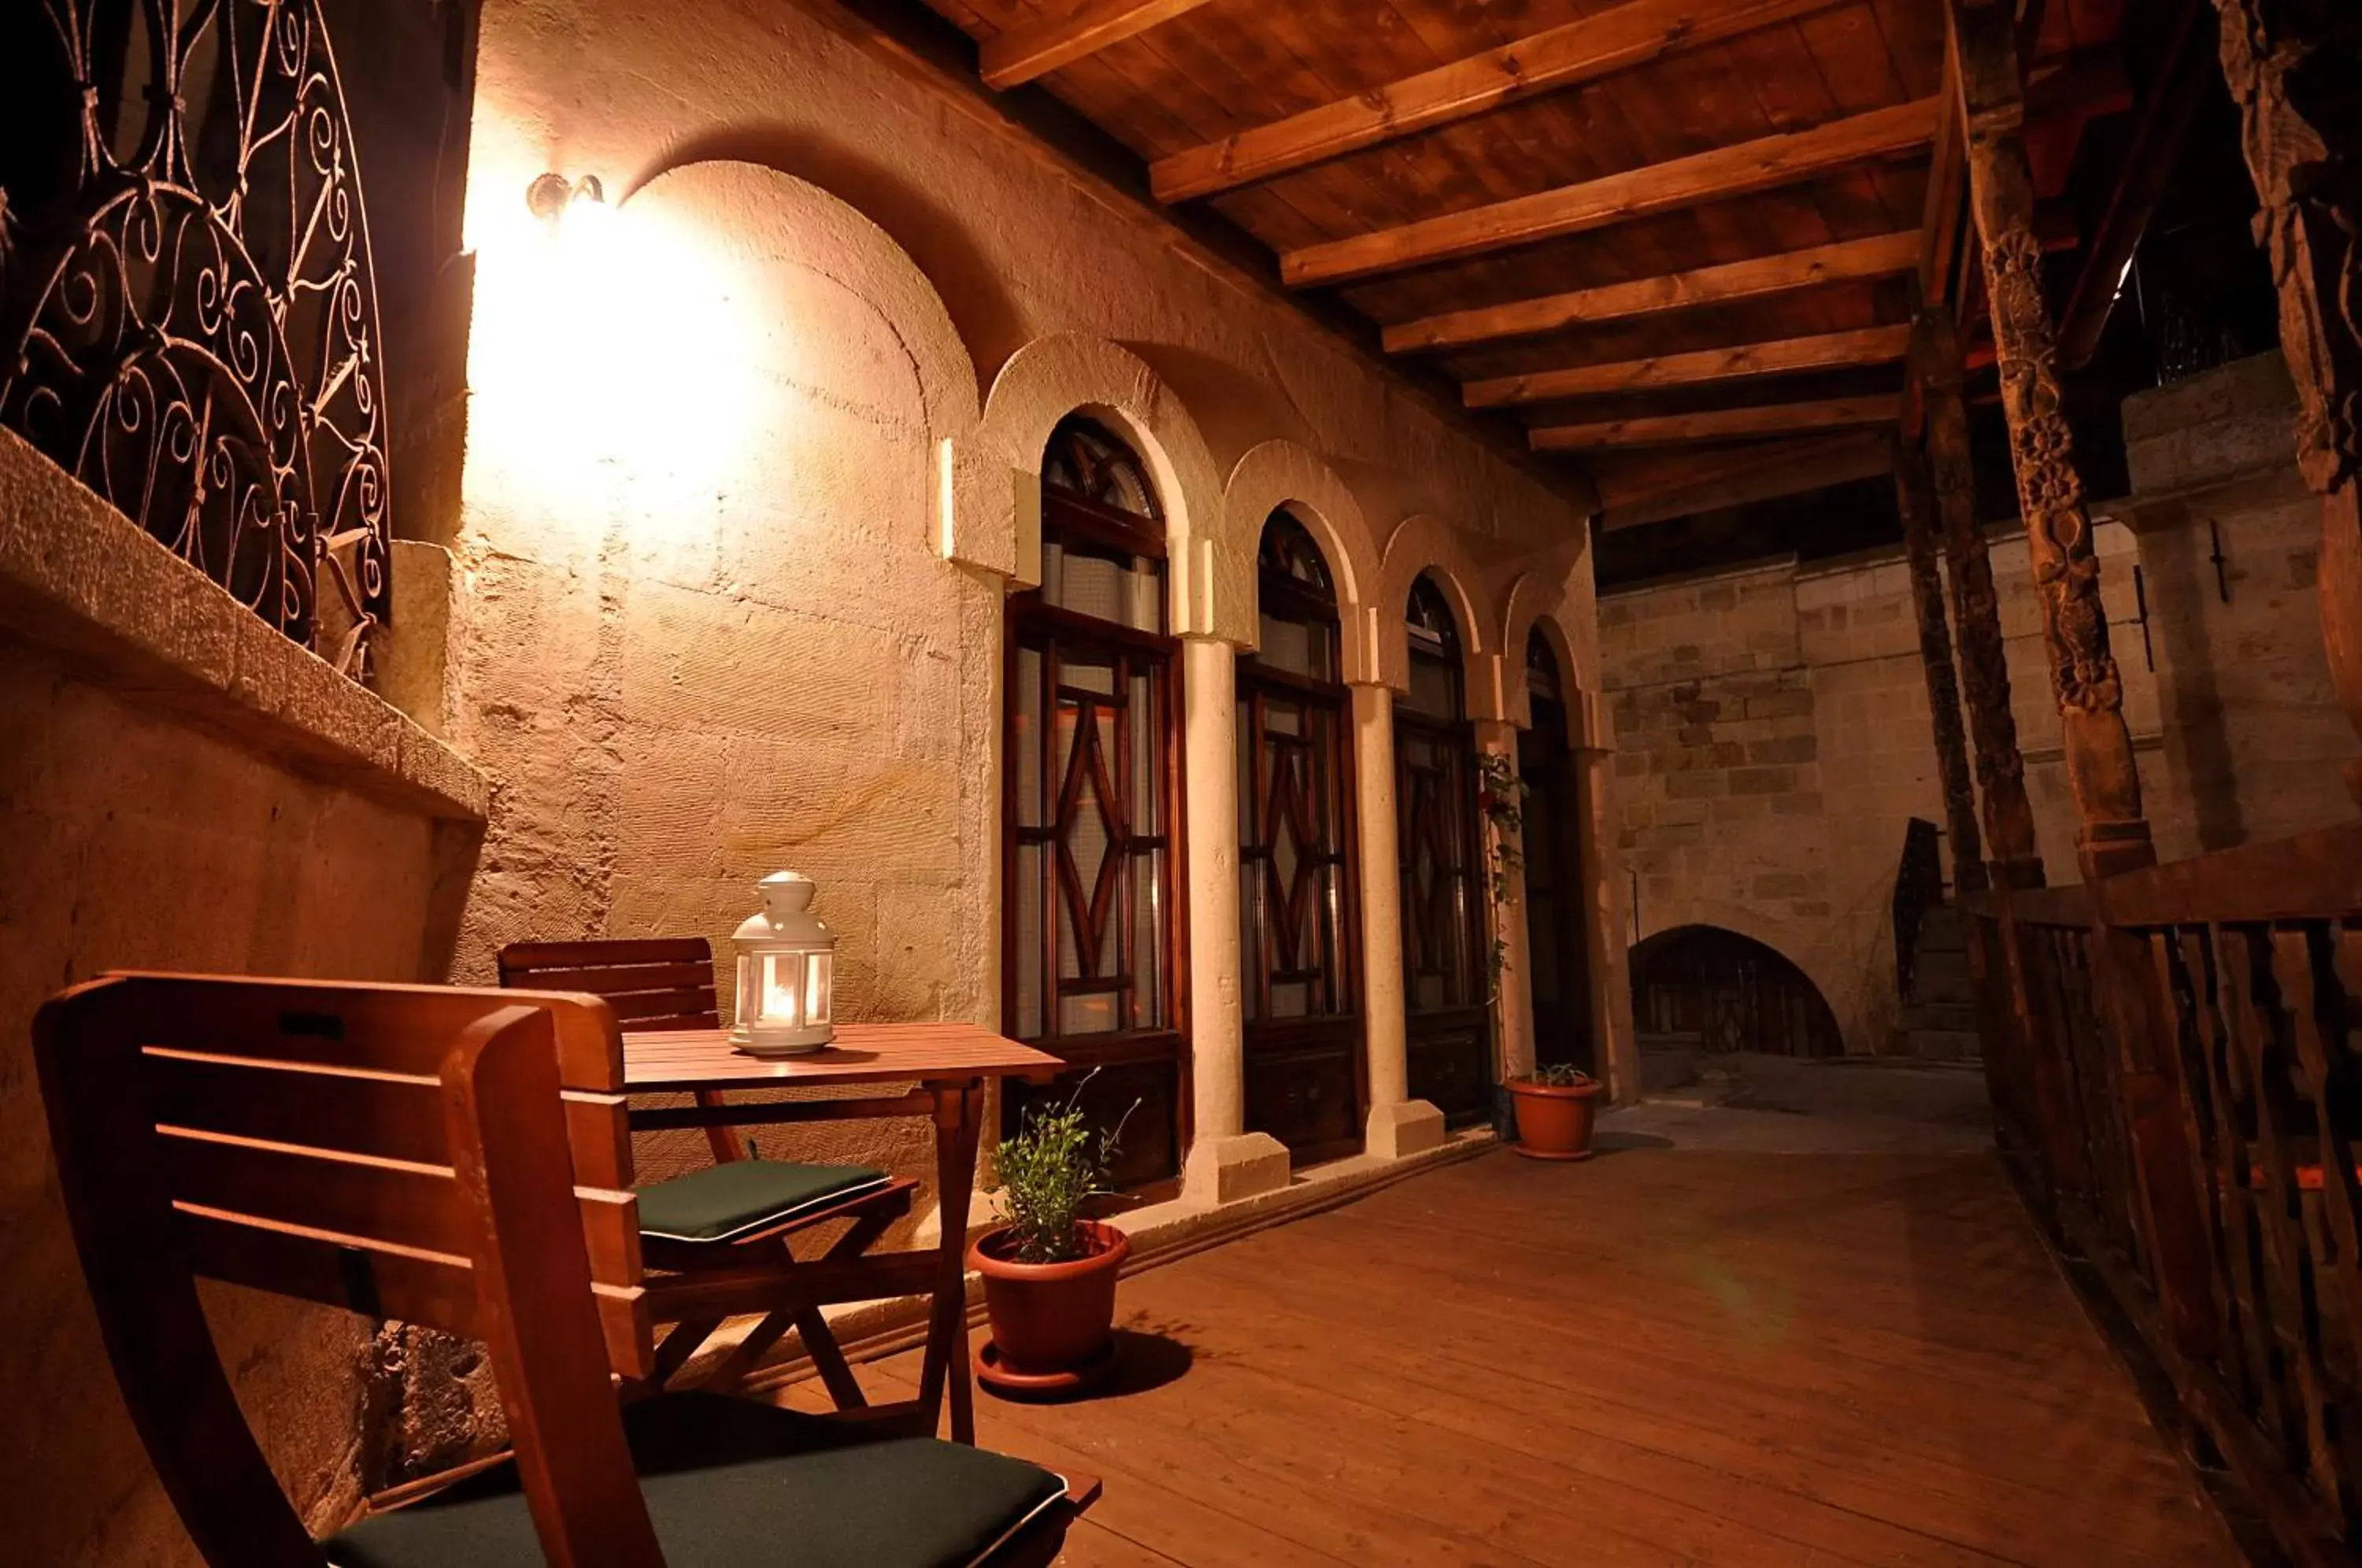 Balcony/Terrace, Dining Area in Has Cave Konak